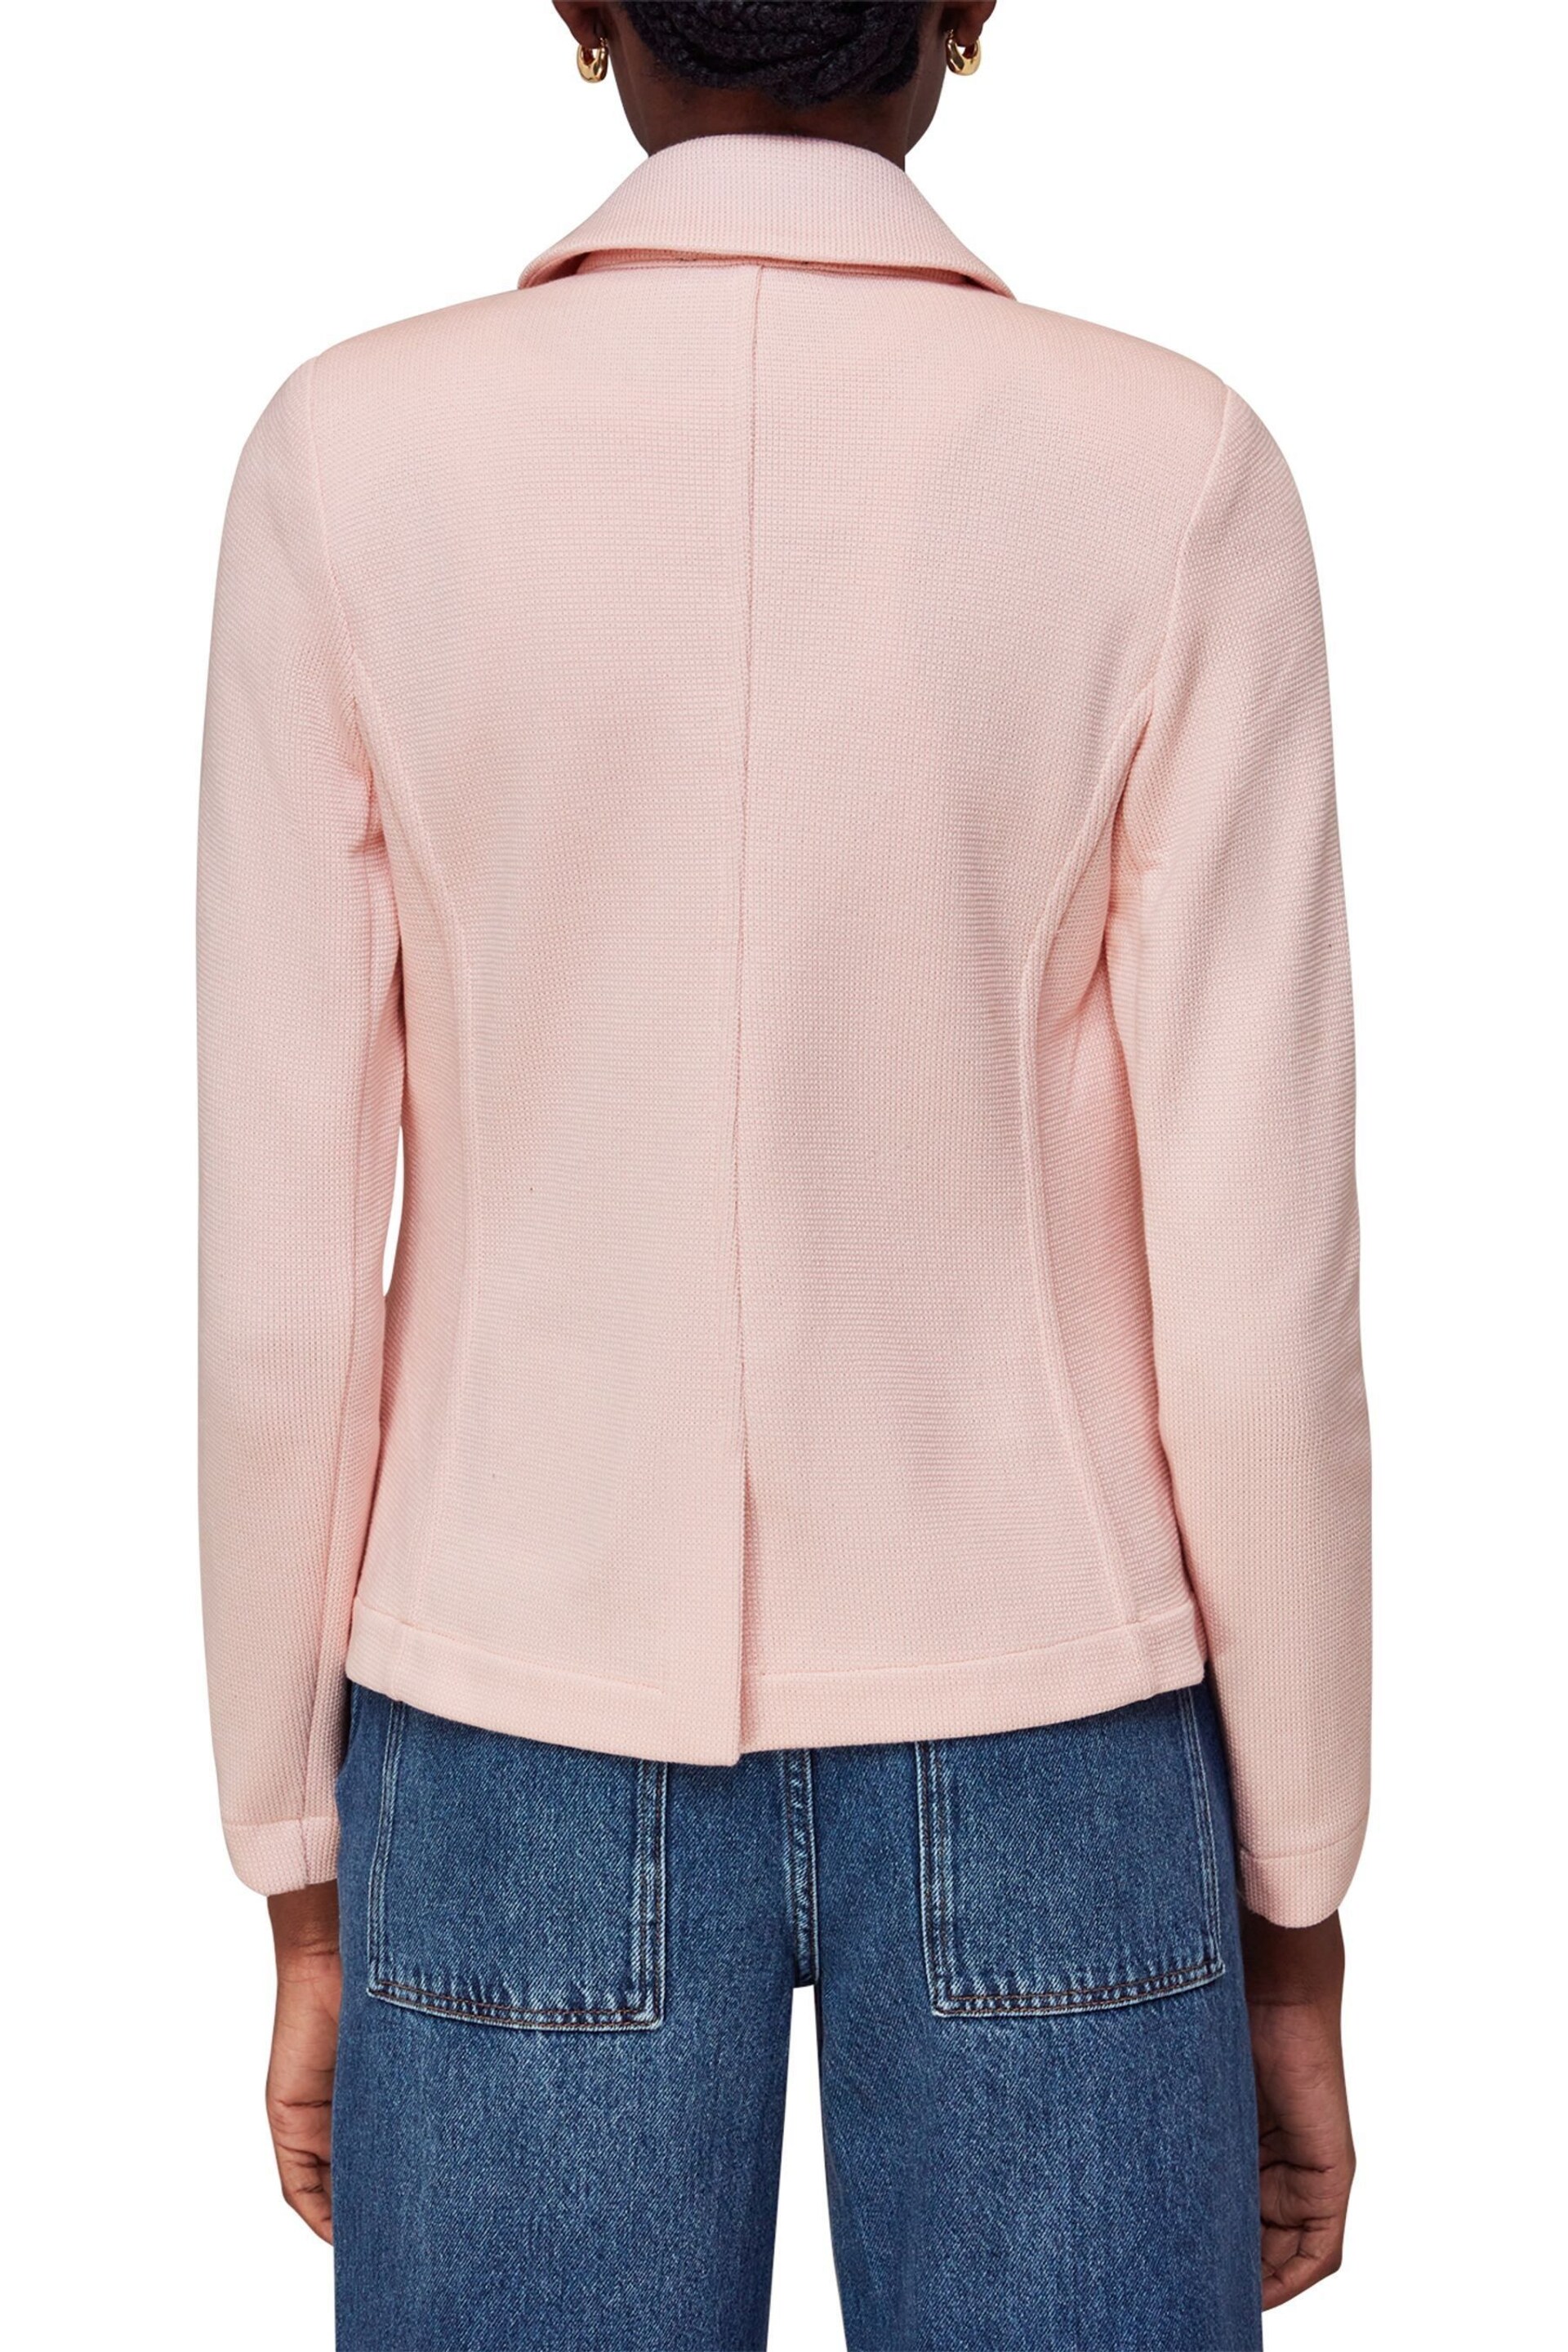 Whistles Pink Slim Jersey Jacket - Image 2 of 4